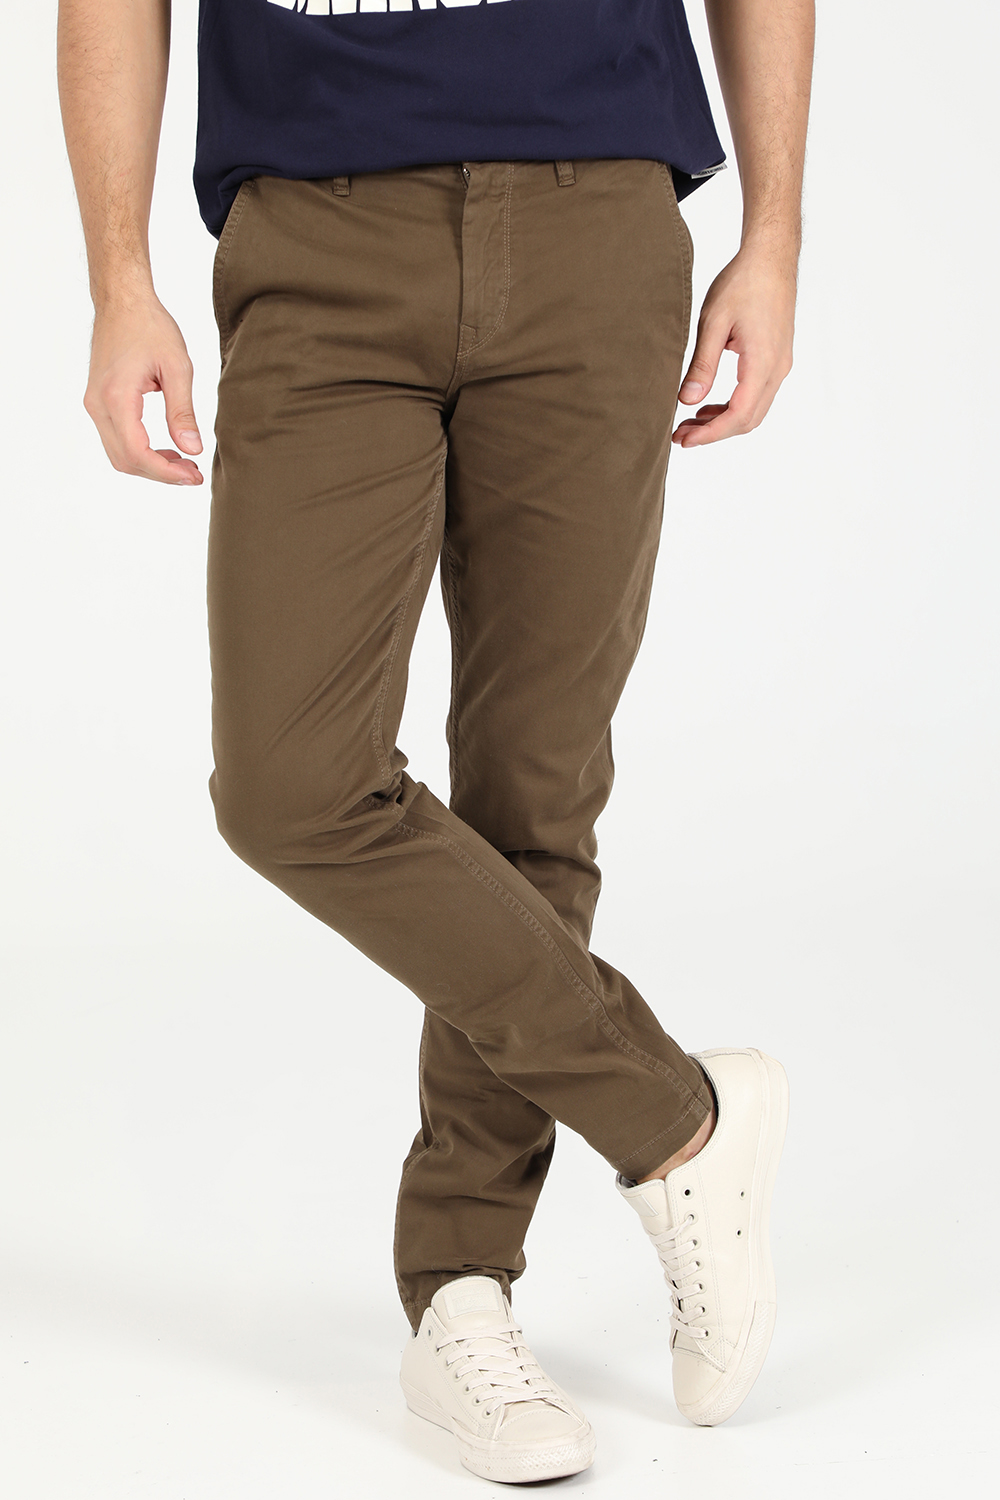 Ανδρικά/Ρούχα/Παντελόνια/Ισια Γραμμή BOSS - Ανδρικό Schino-Taber D παντελόνι Boss πράσινο